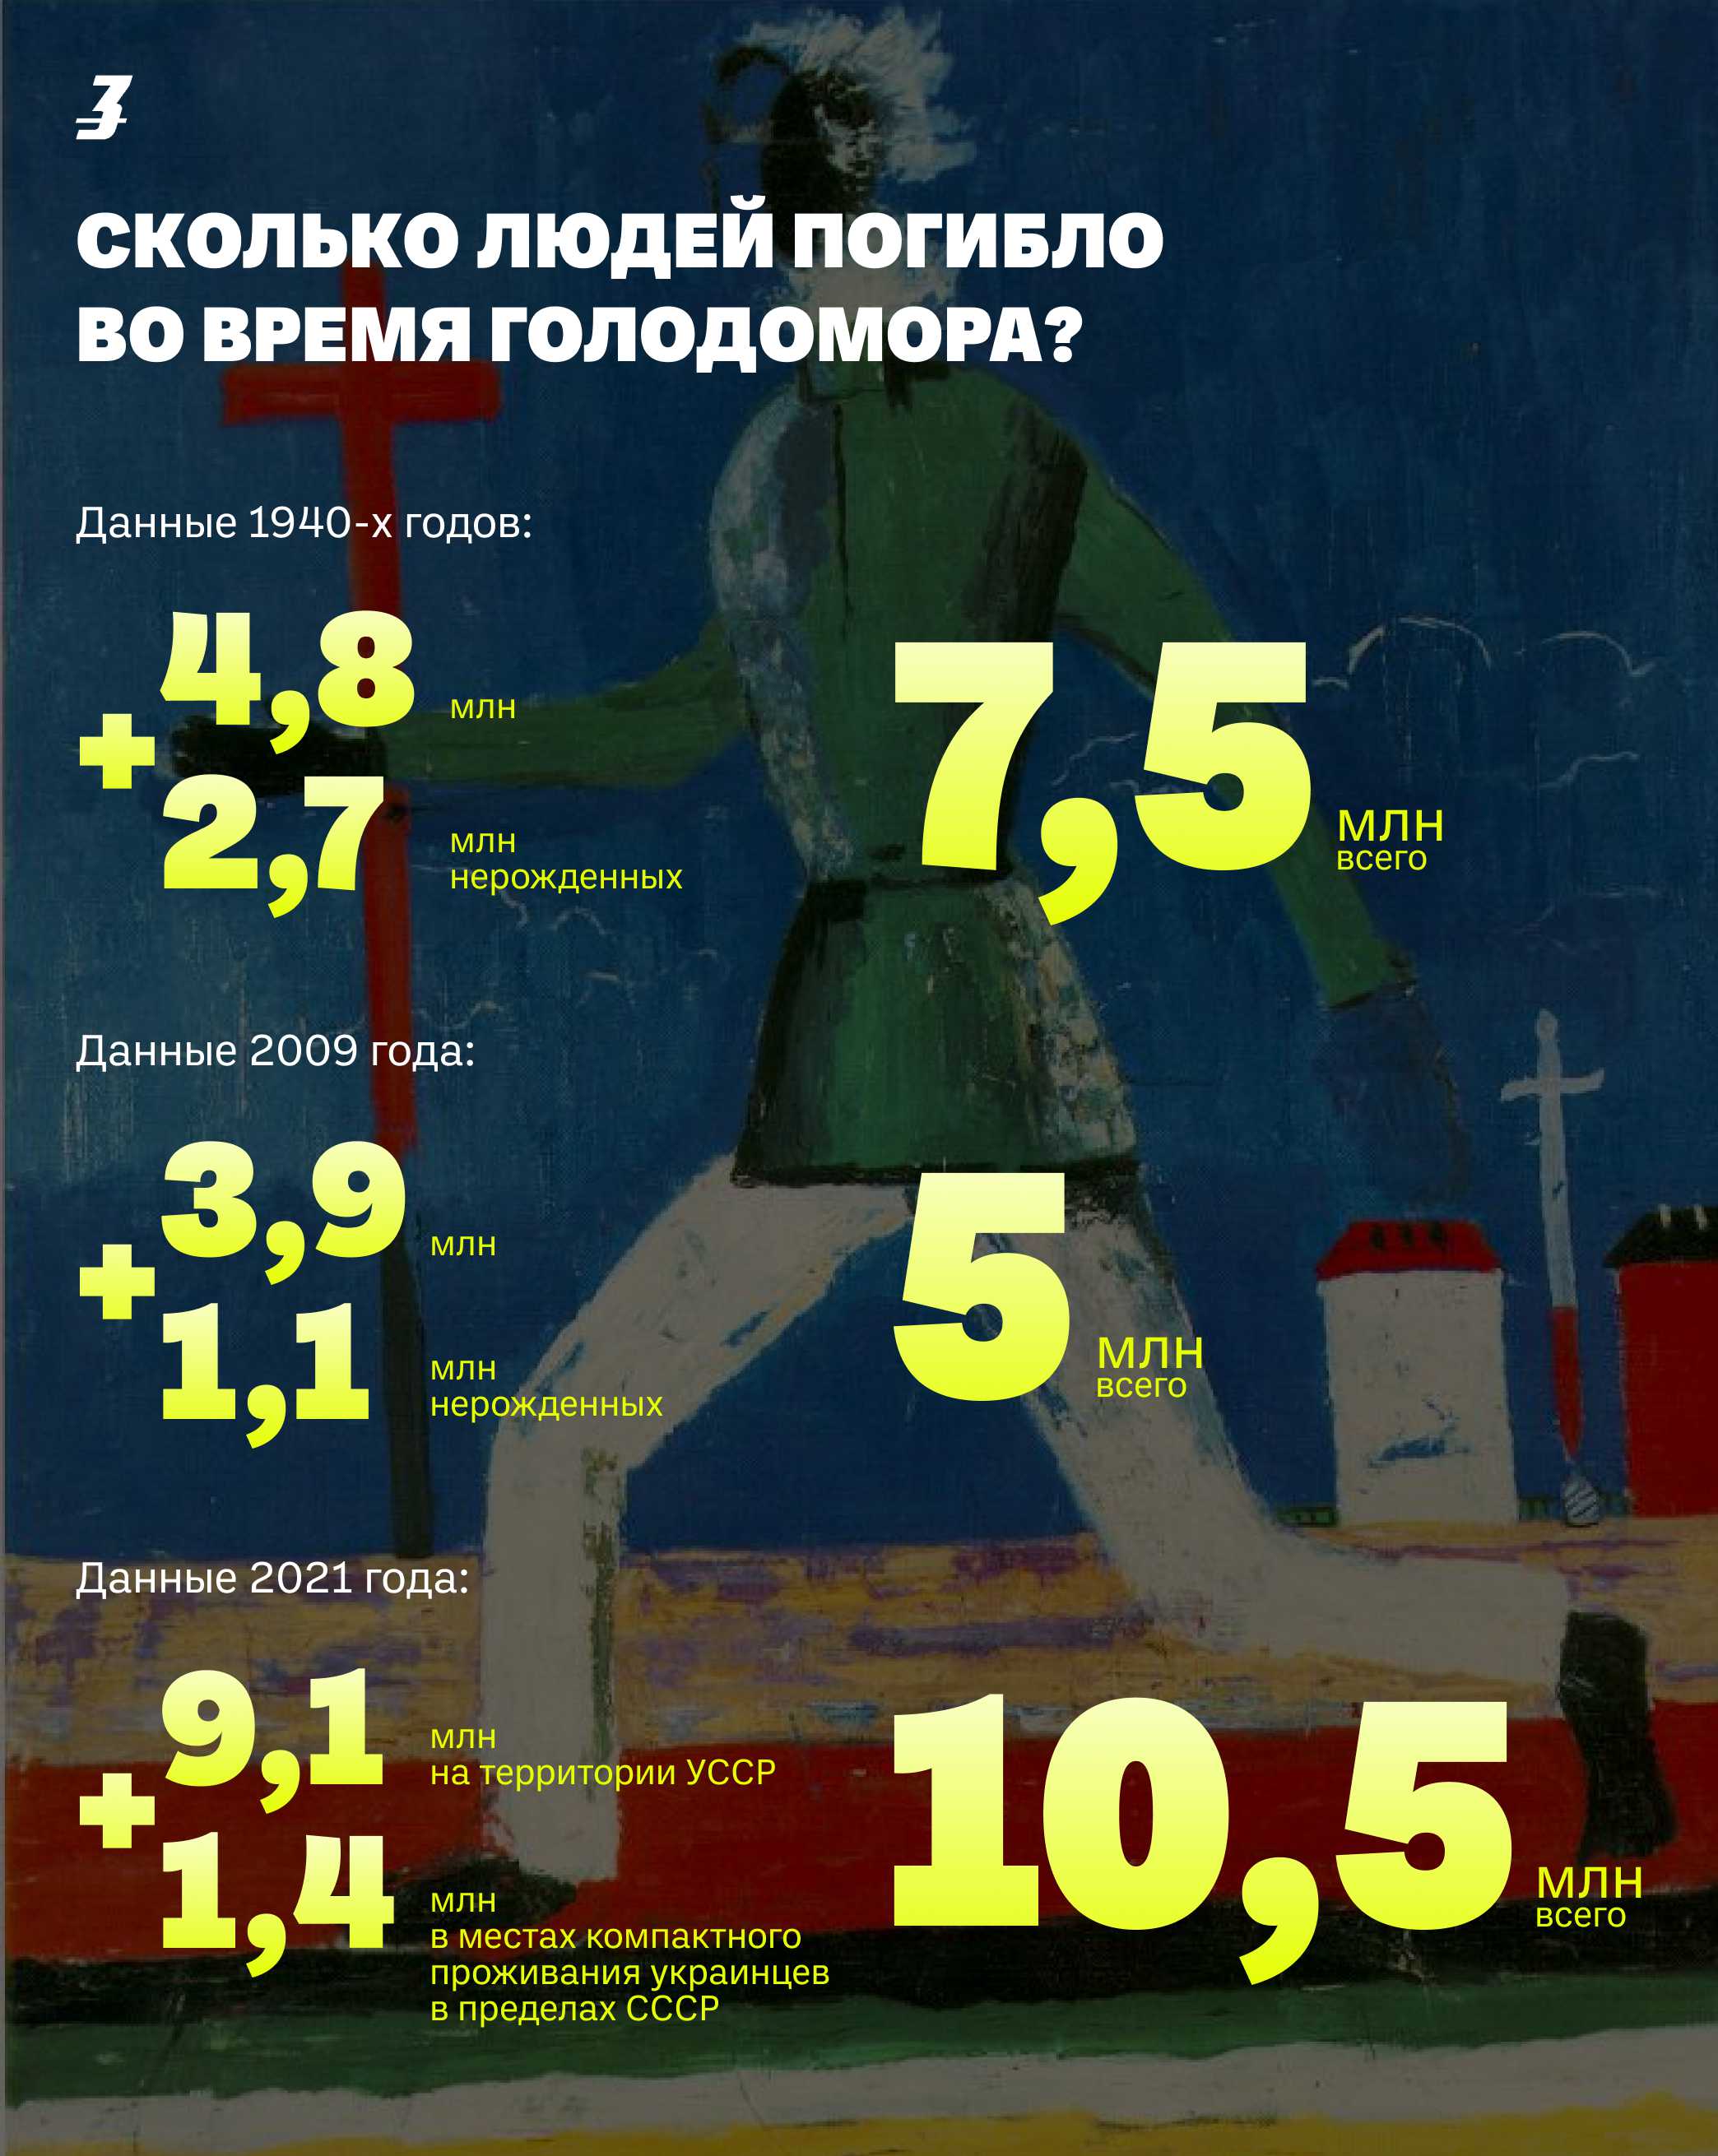 Голодомор в Украине: почему цифры жертв разнятся и кто прав